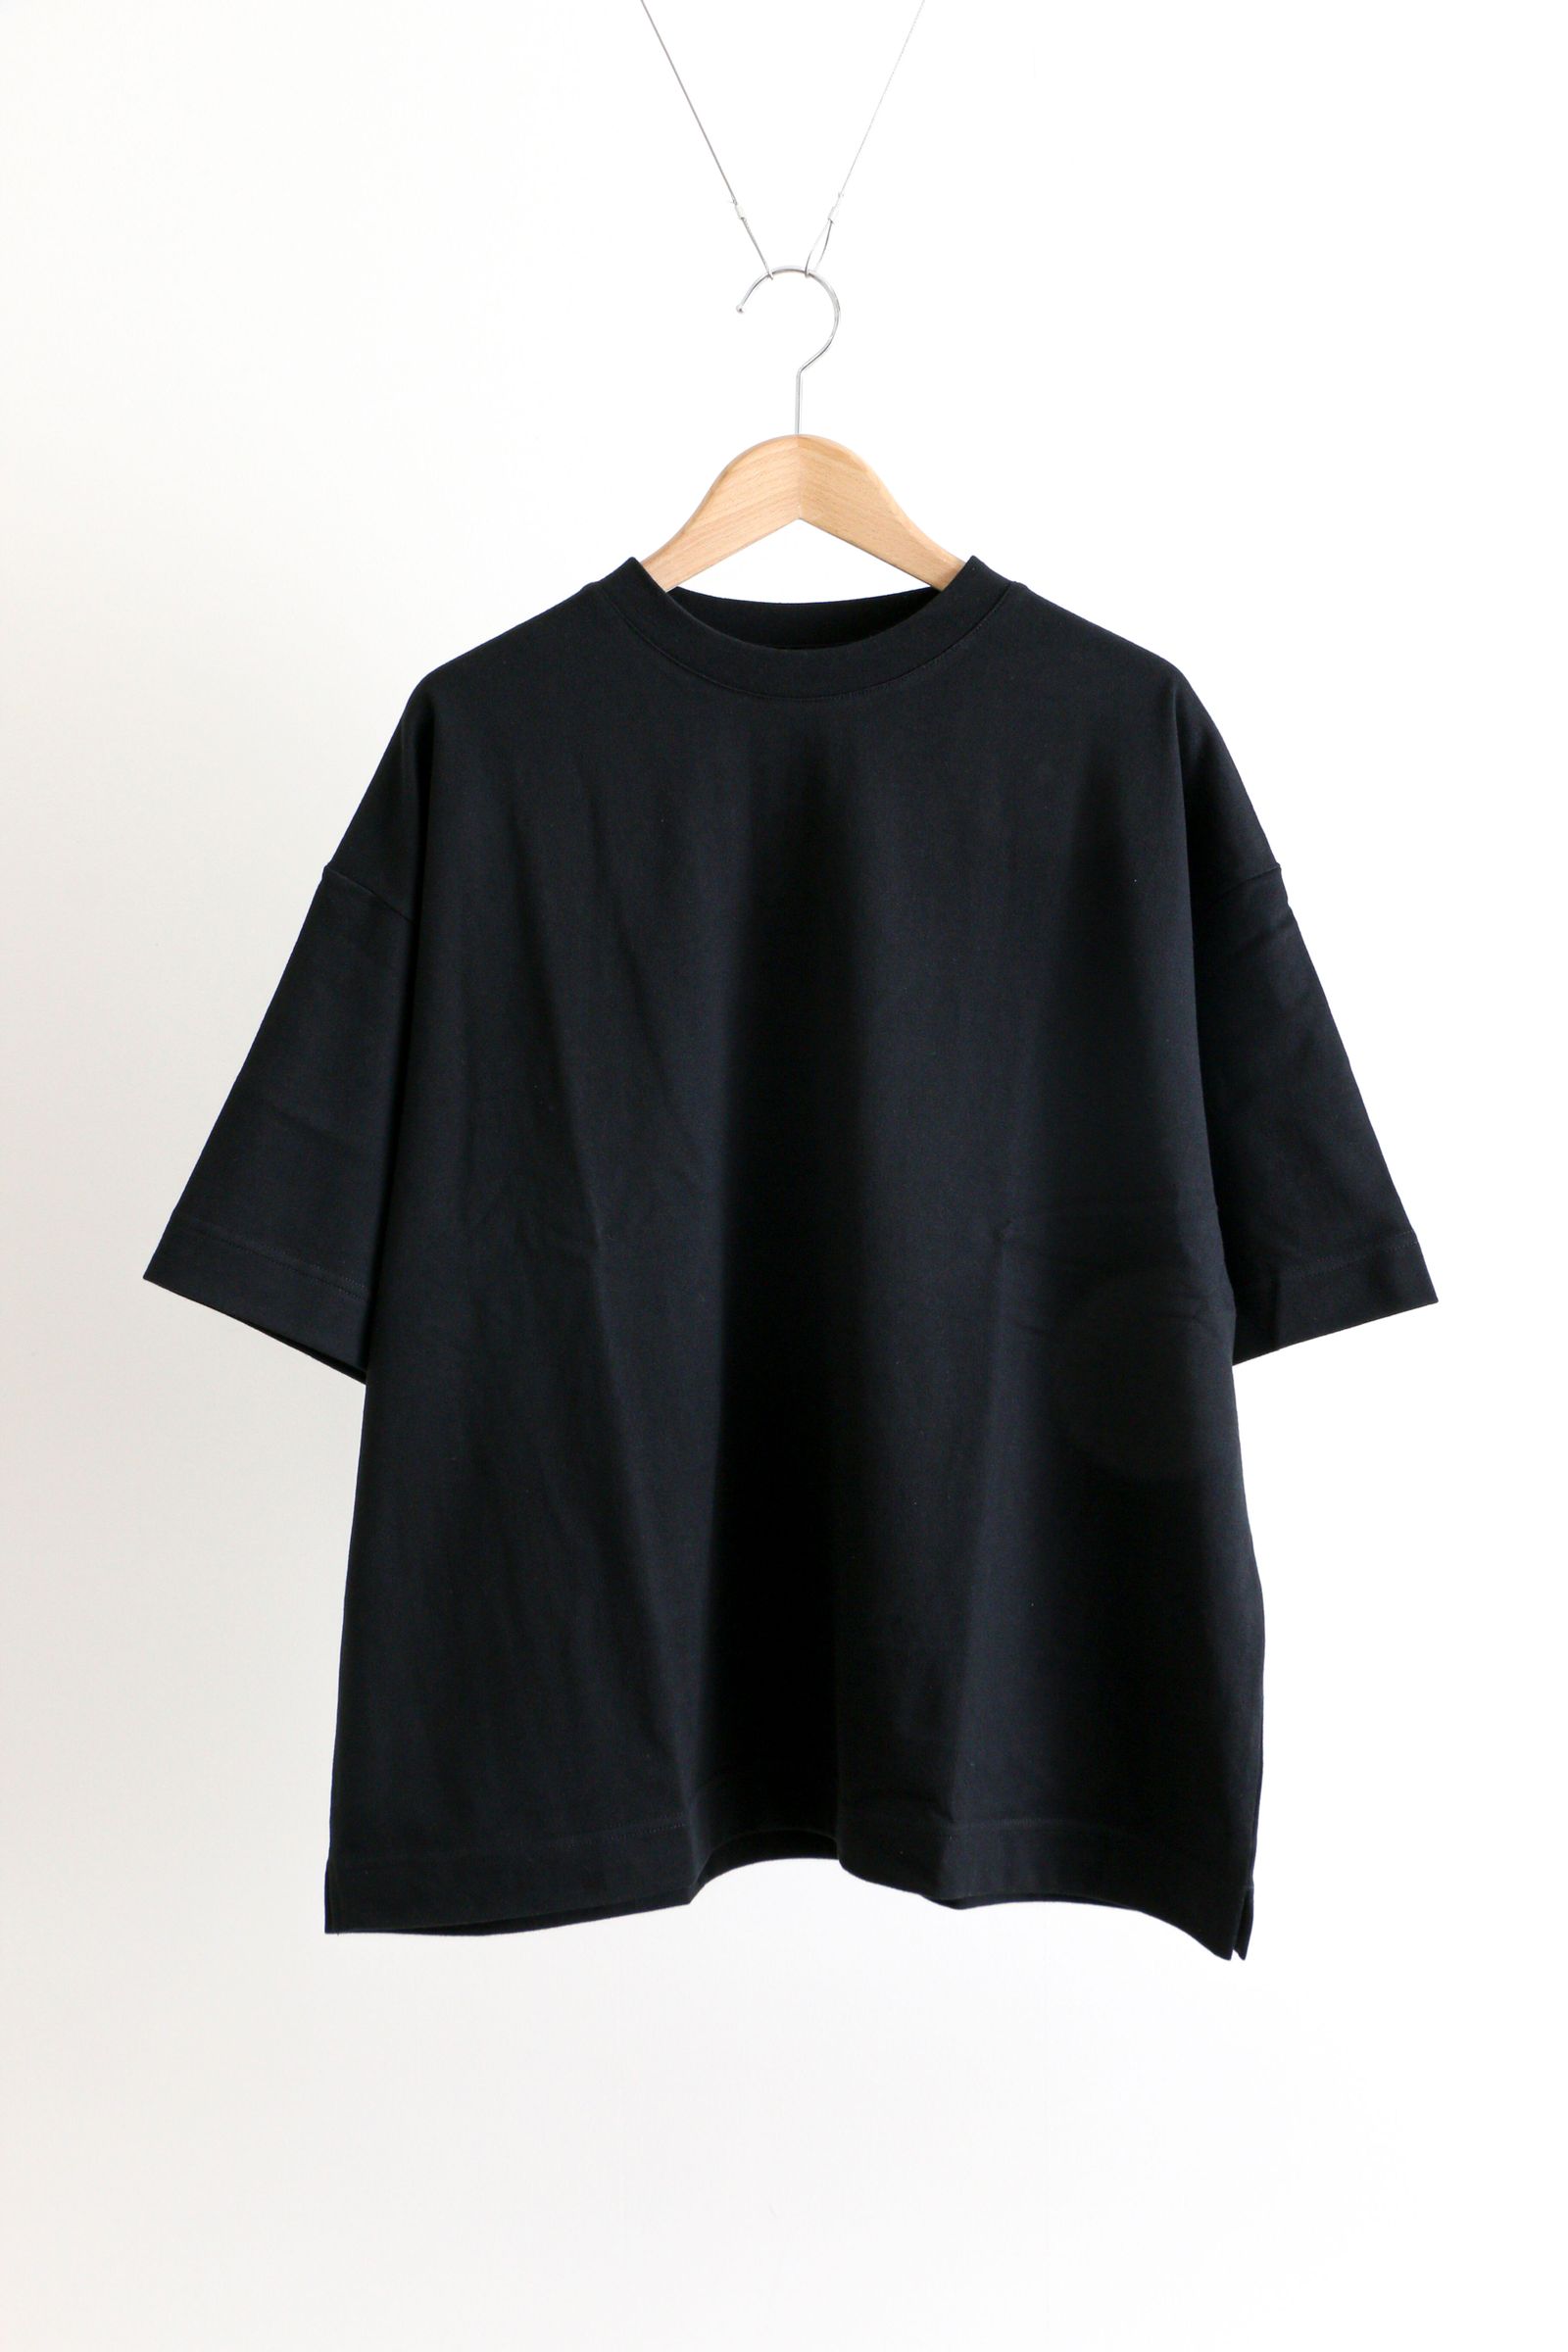 トップス / Tシャツ・カットソー 通販 | koko